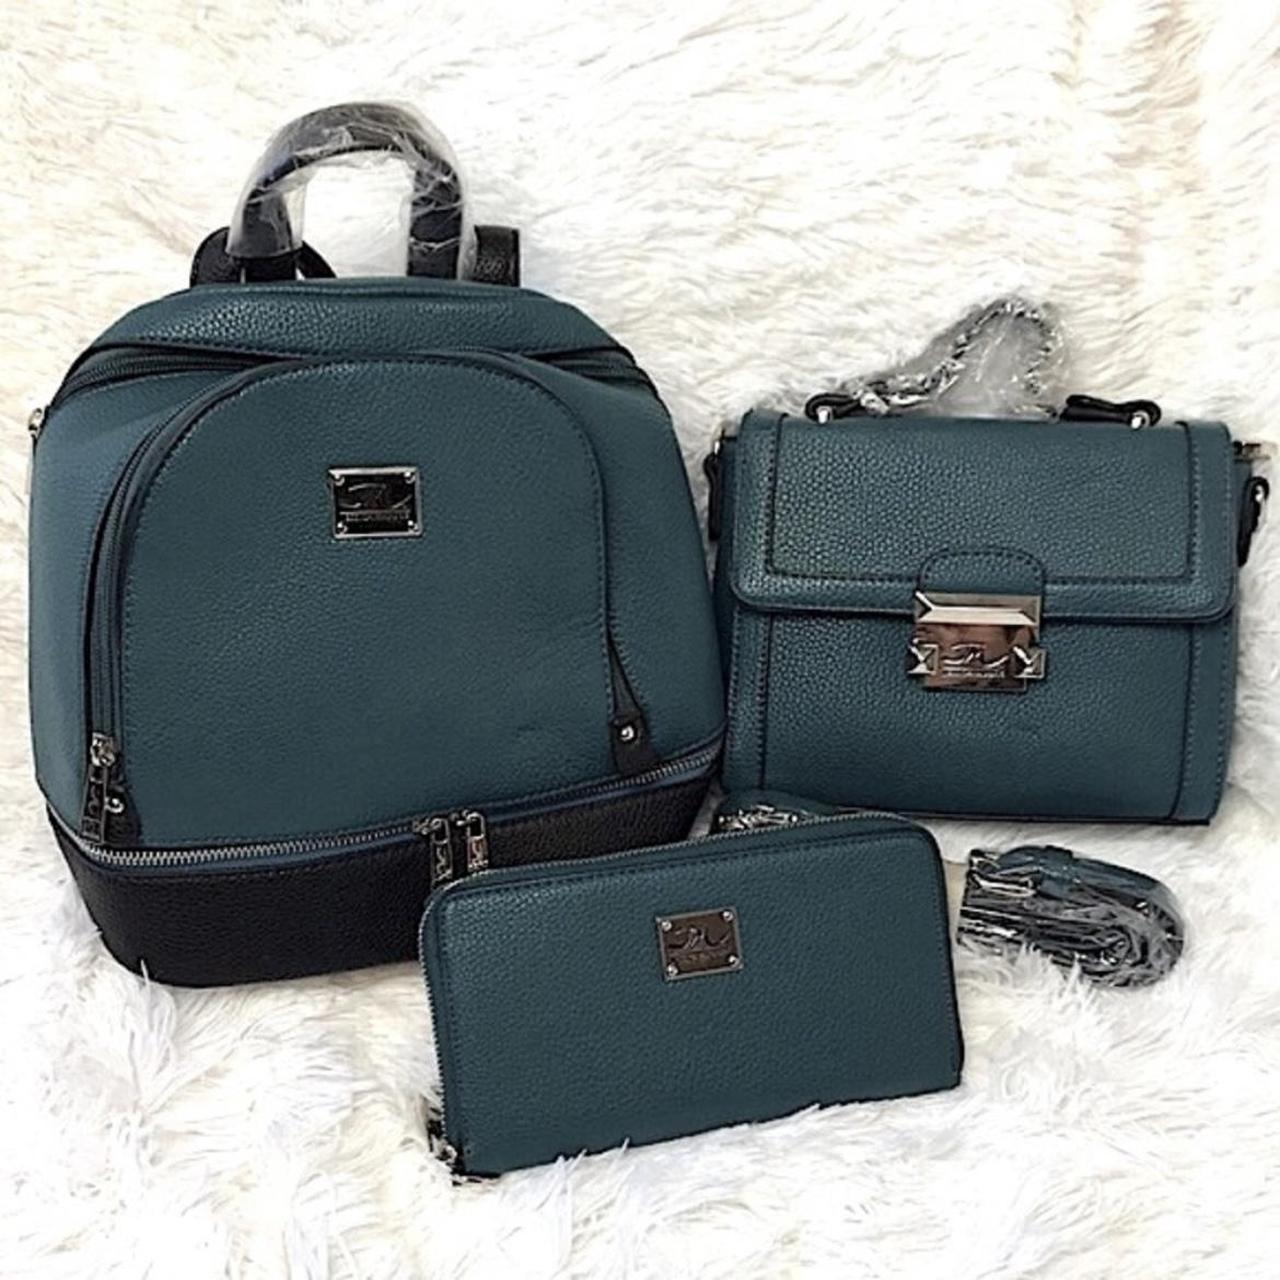 Jessica Moore new purse - Bags & Luggage - La Mesa, California